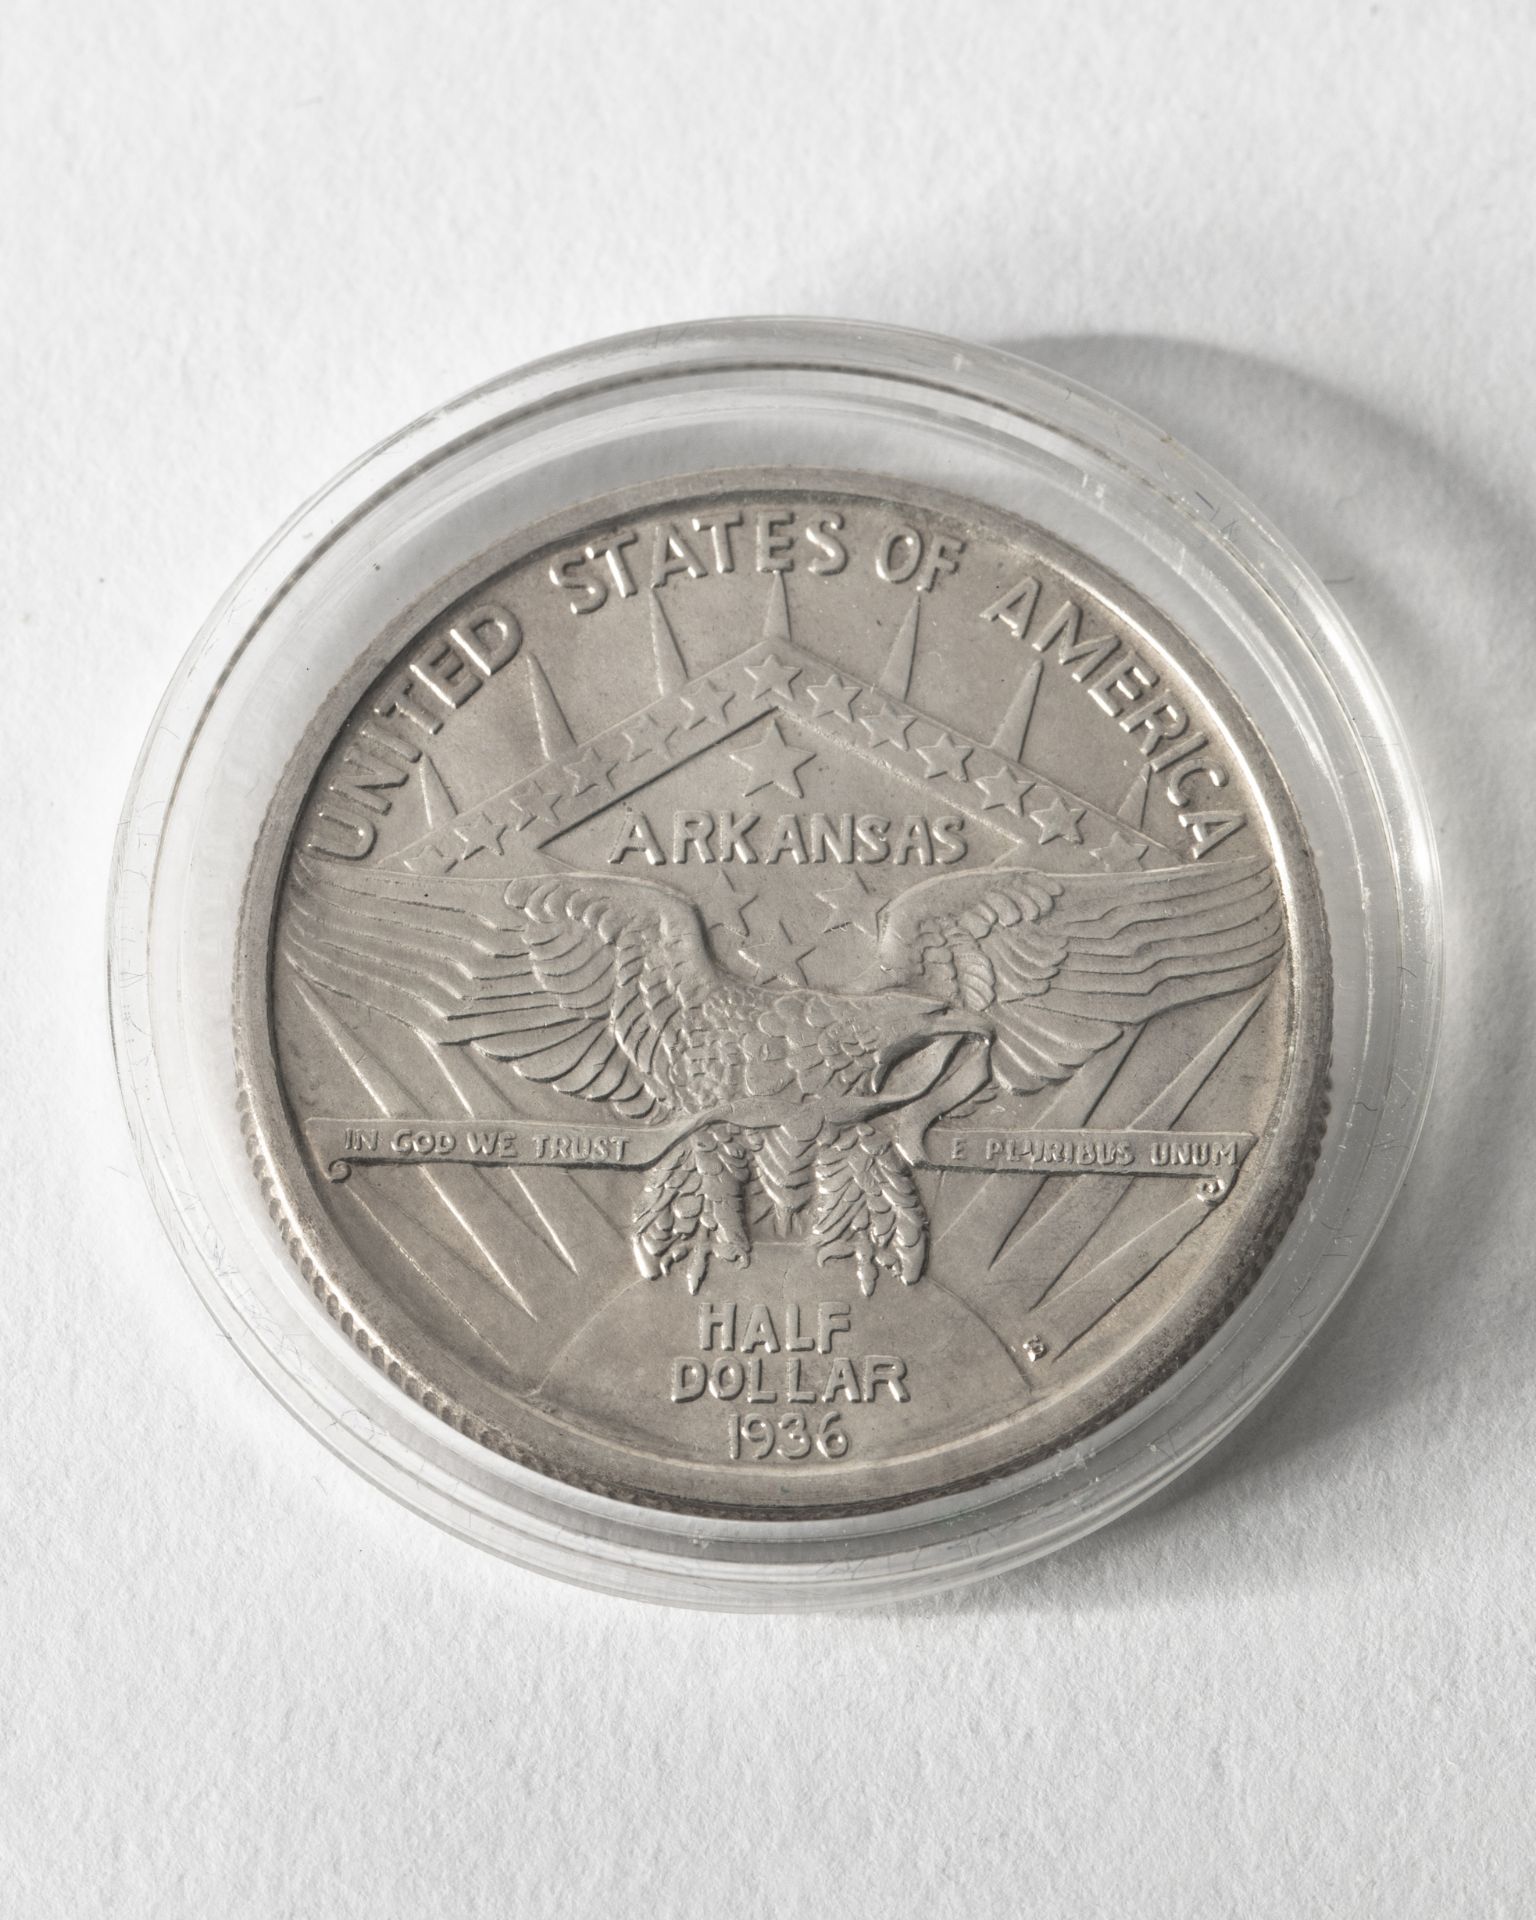 2x 1/2 Dollar USA. 1935. Arkansas Centinal 1836-1936. - Image 4 of 4